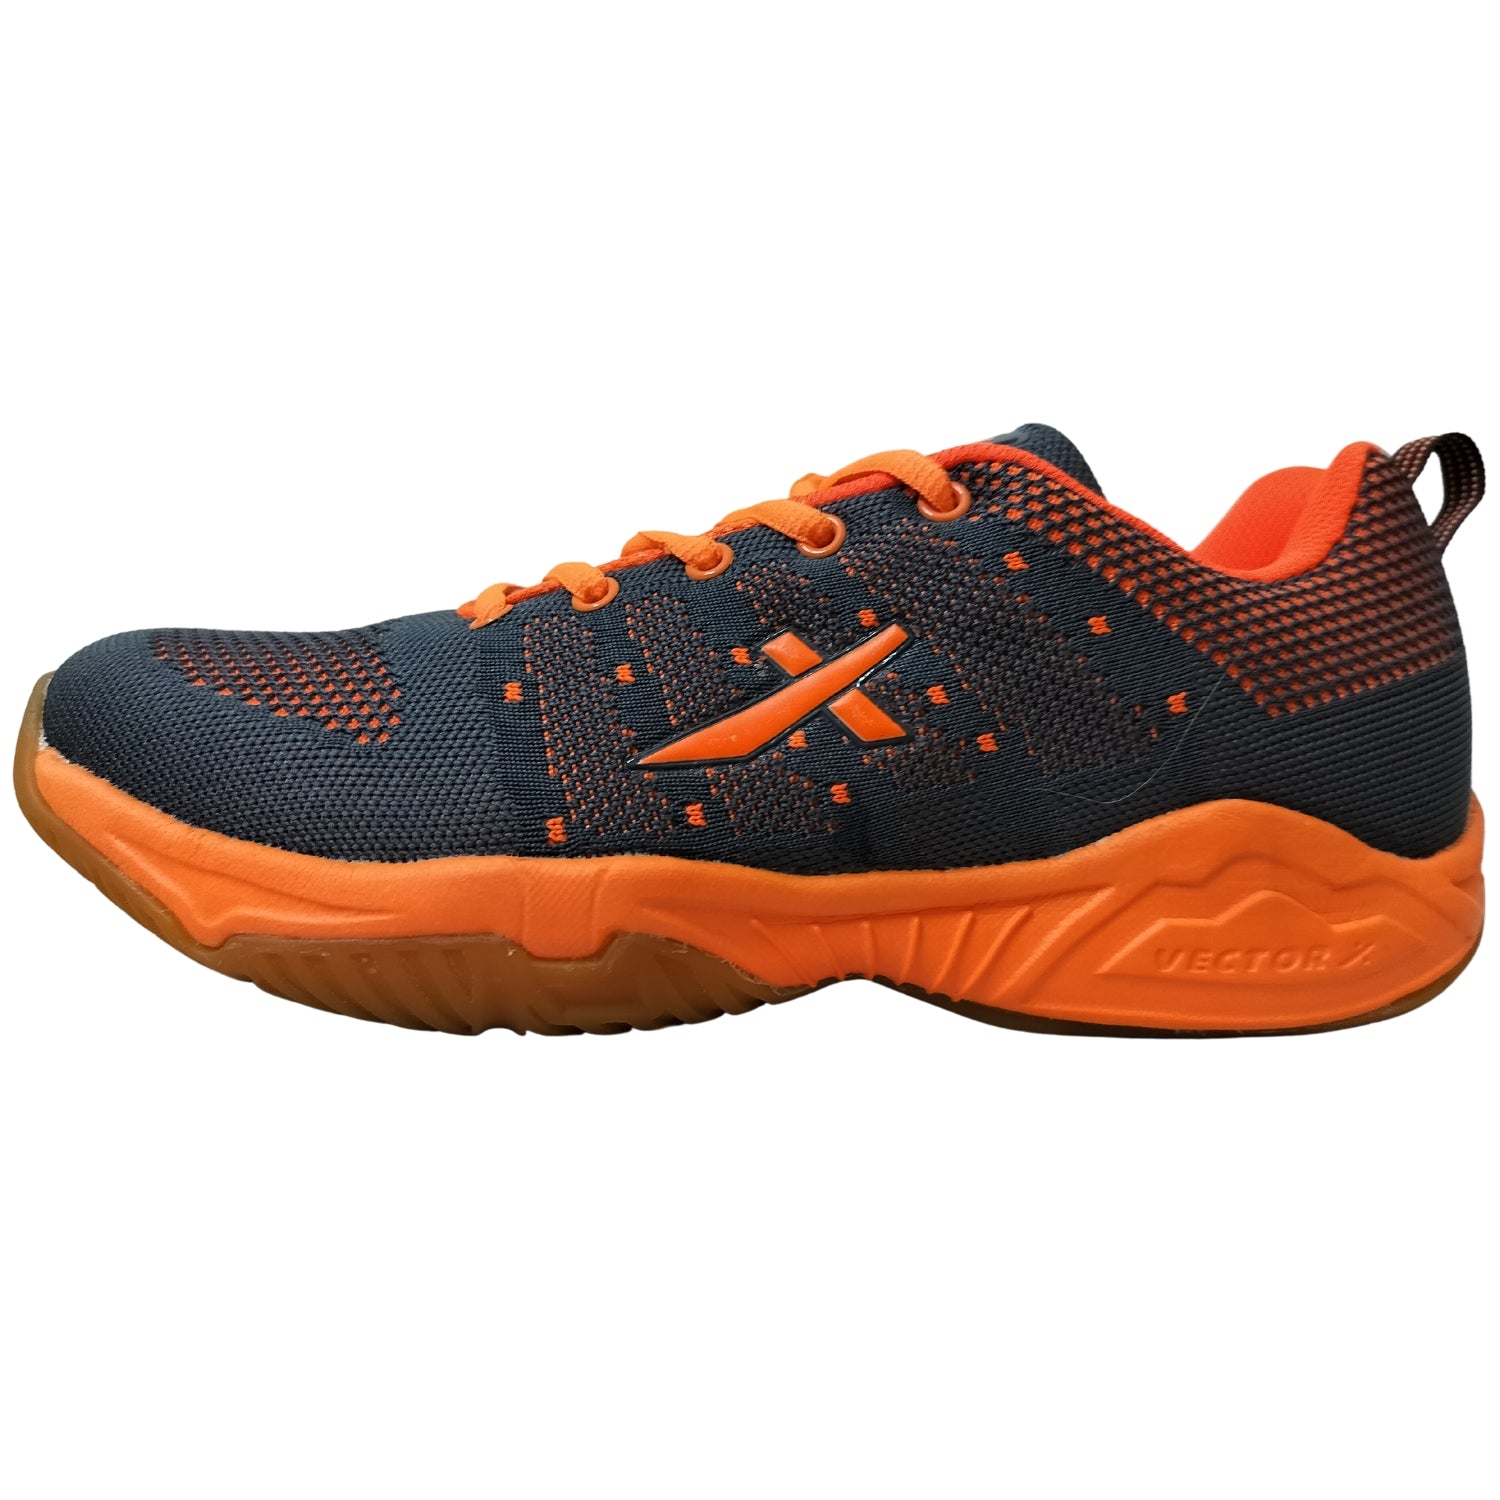 Vector X CS 2030 Kids Badminton Shoes, Grey/Orange - Best Price online Prokicksports.com